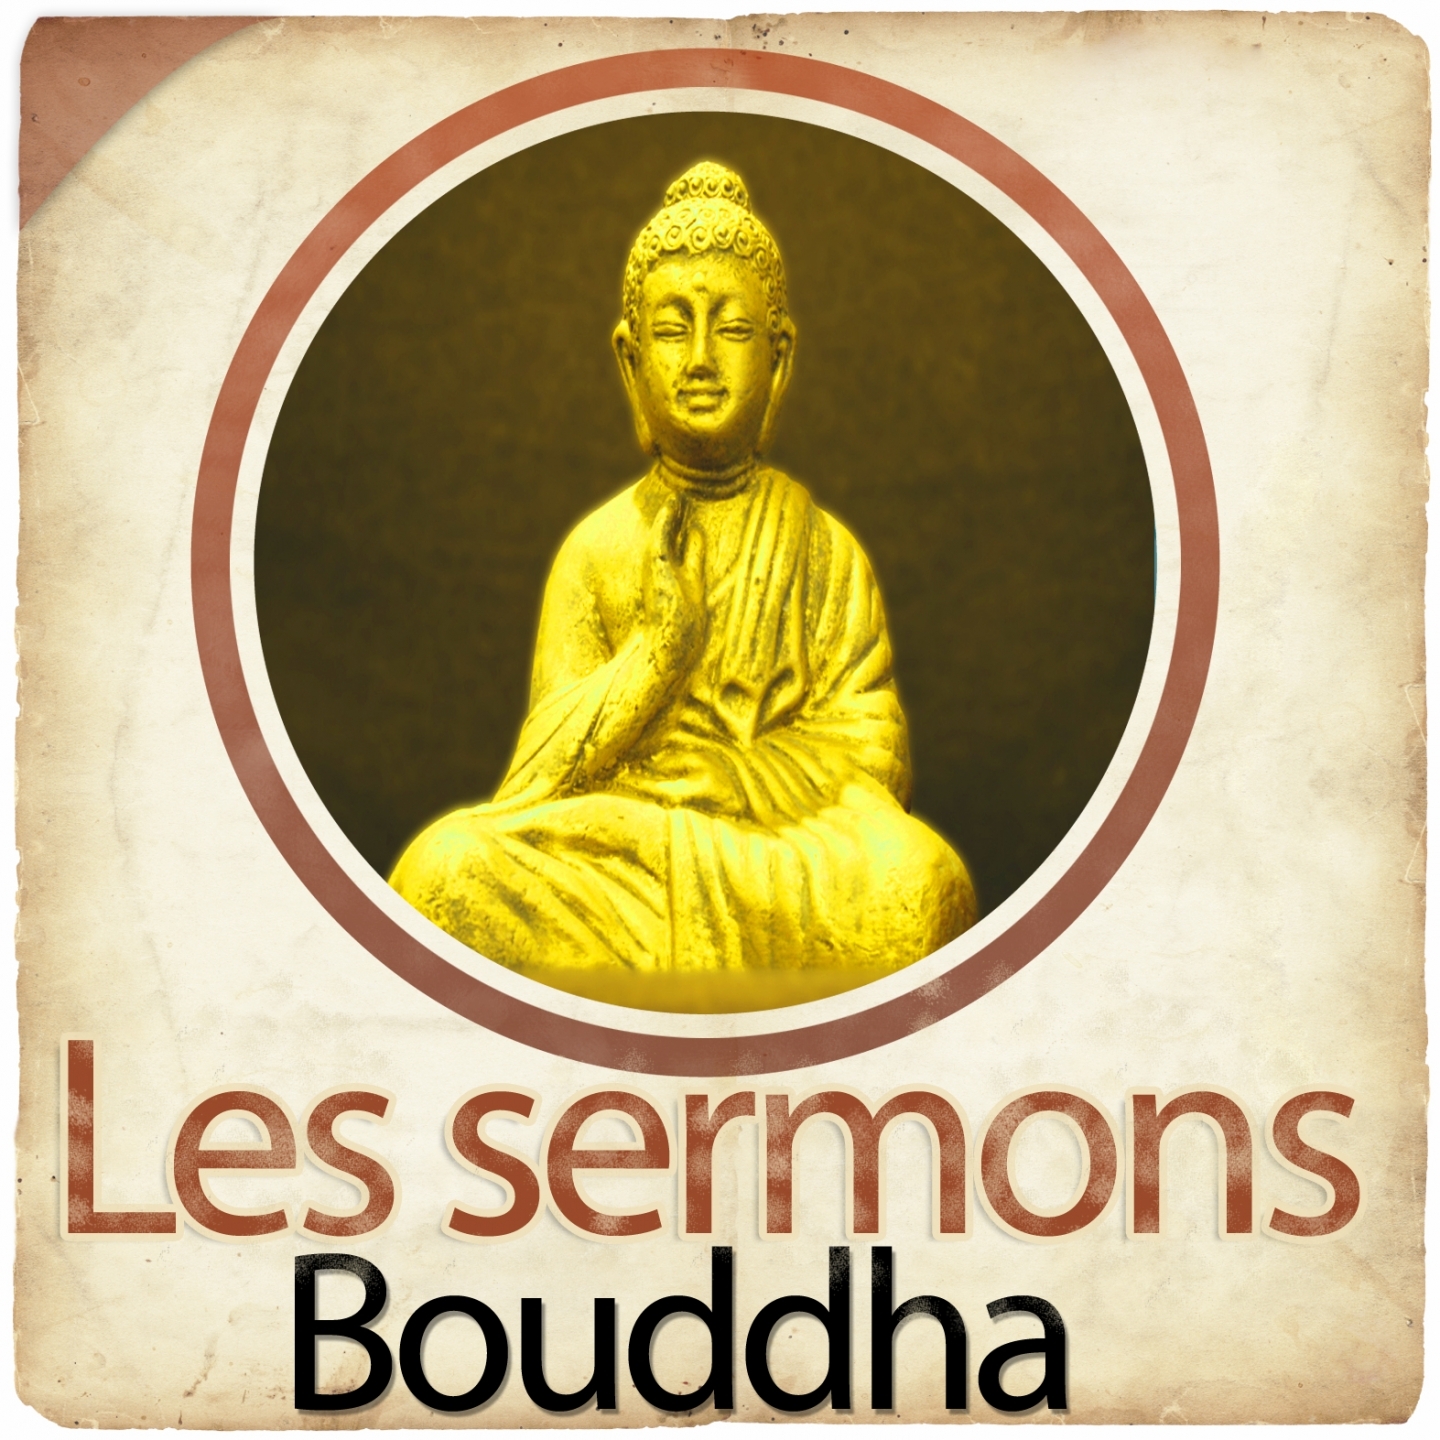 Les sermons de Bouddha, chapitre 3